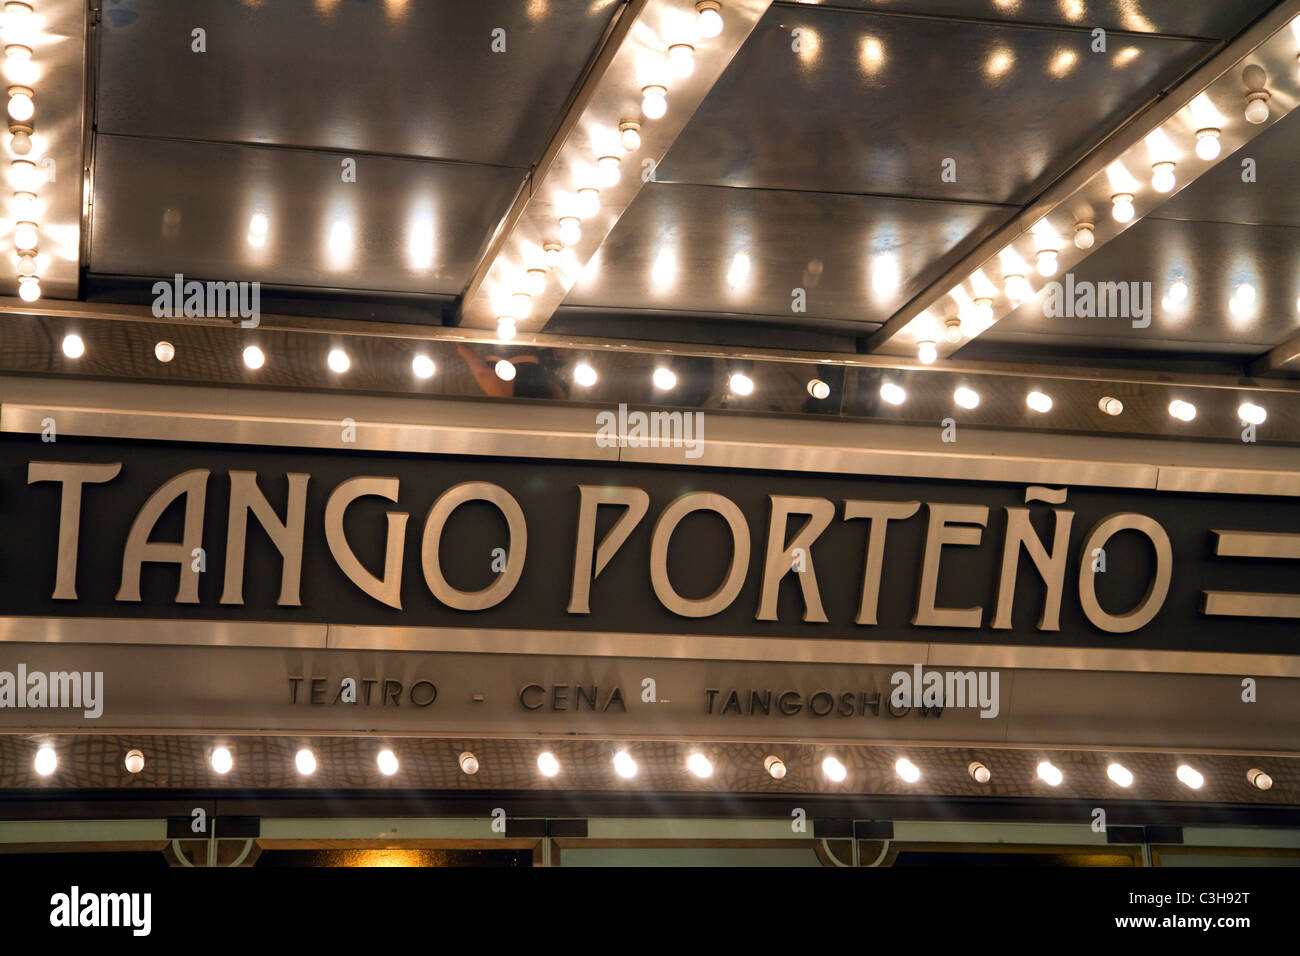 Tango porteño, es un teatro para mostrar la danza del tango en Buenos Aires, Argentina. Foto de stock